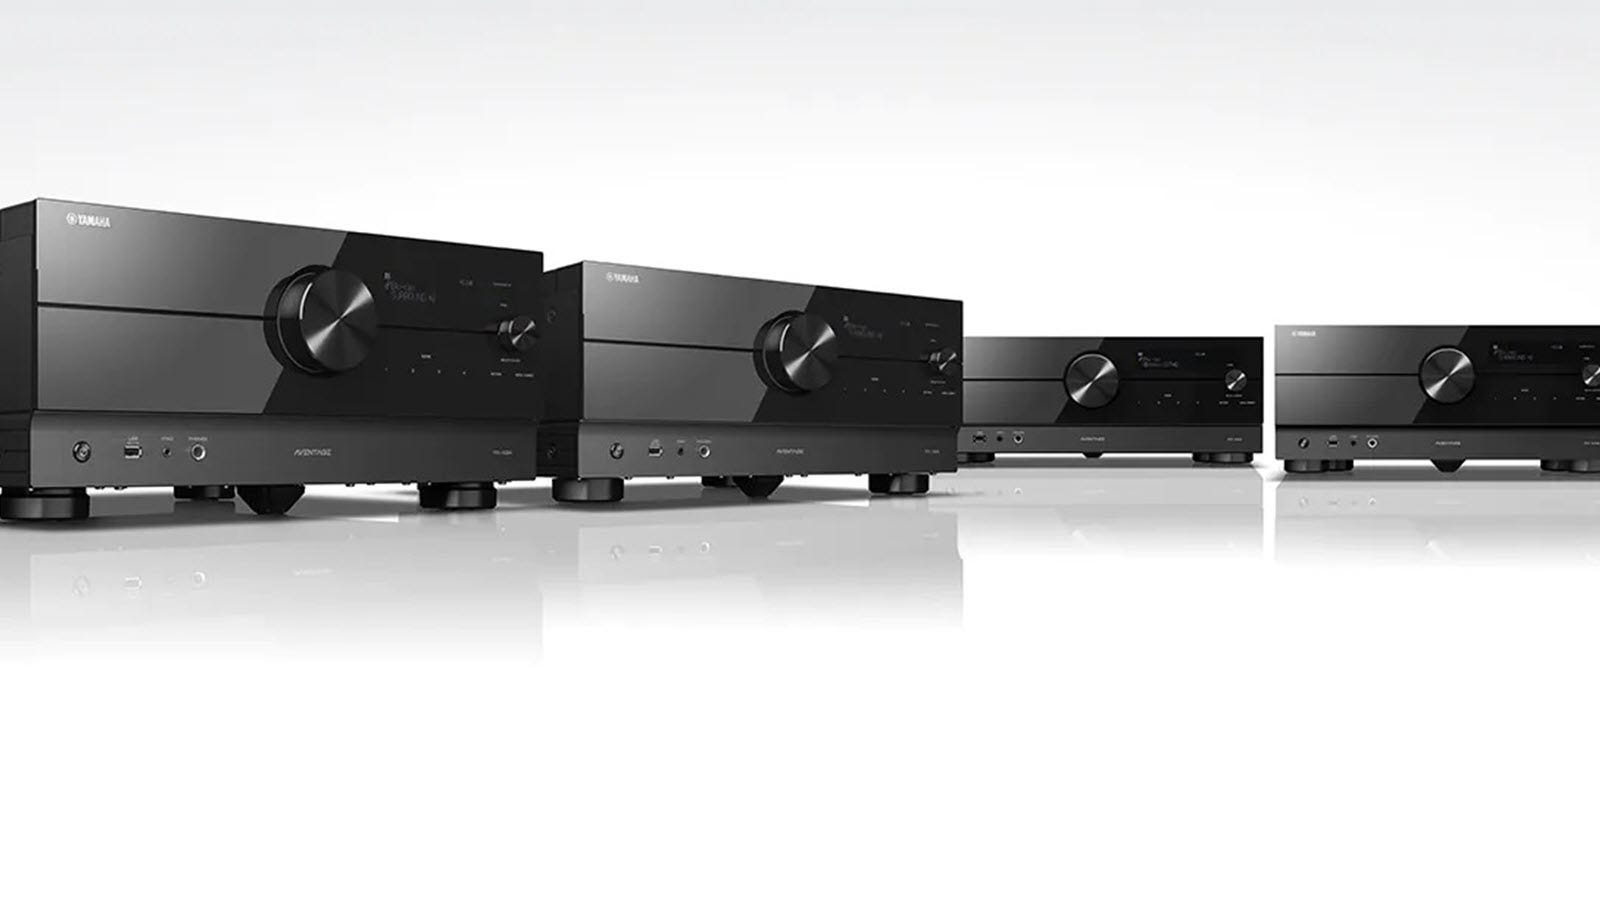 Penerima stereo Yamaha baru ini mendukung video 8K dan Xbox Series X